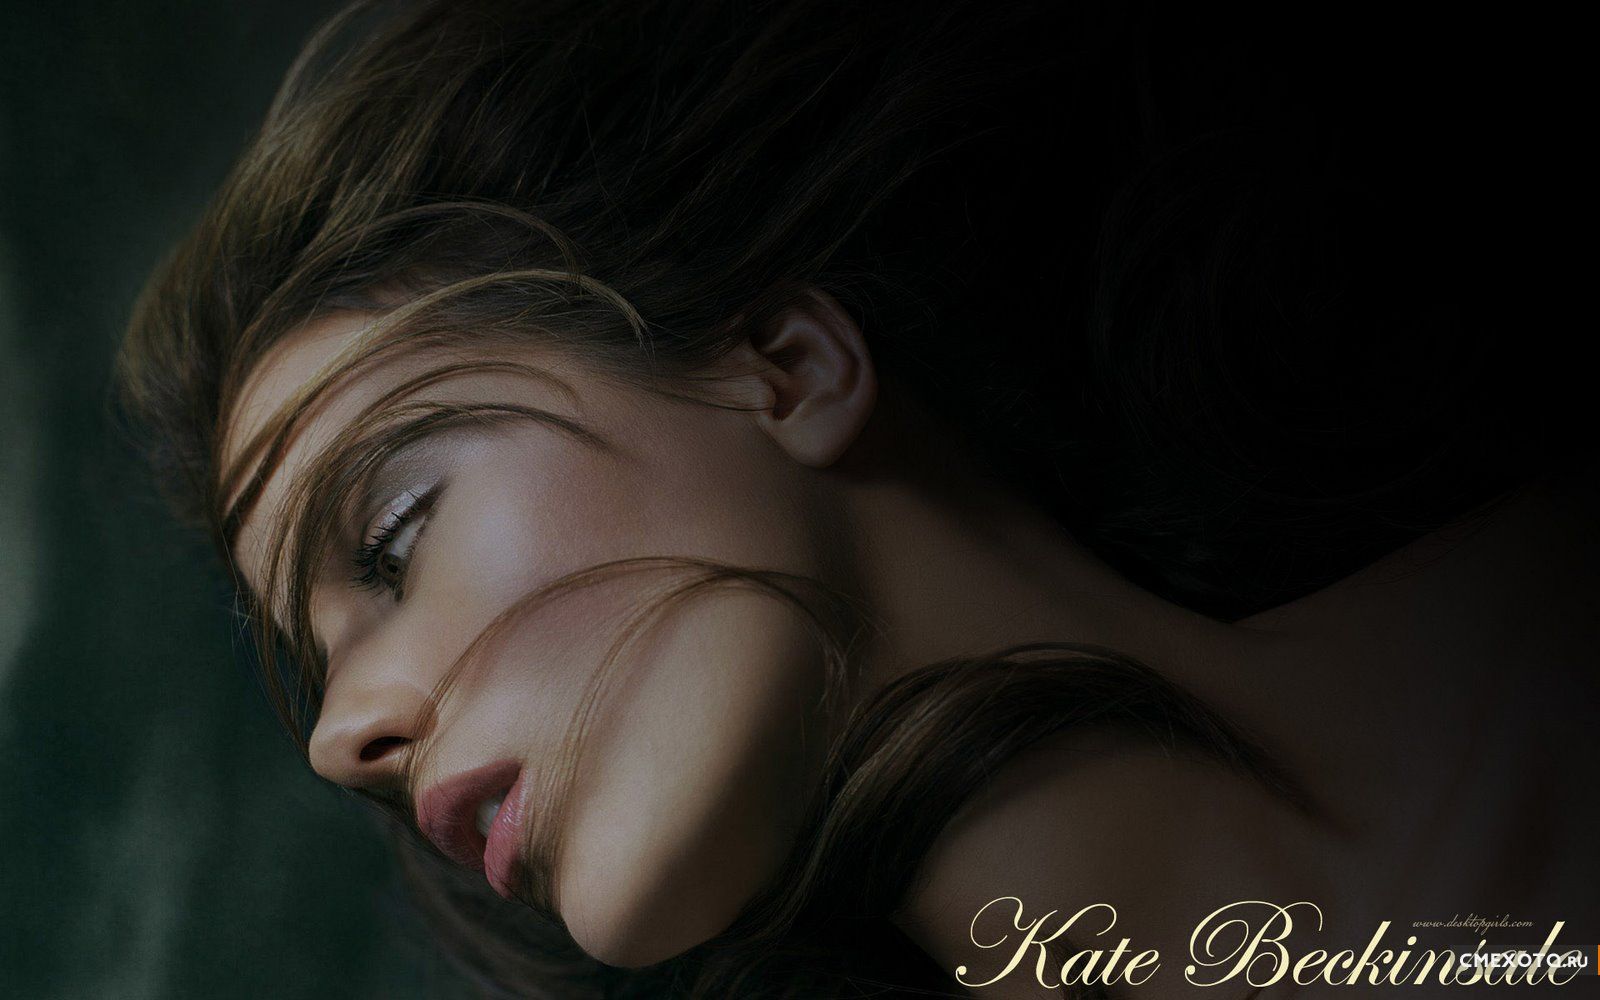 Кейт Бекинсейл (Kate Beckinsale) - Фотосессии, биография и фильмография (80 HQ фото)